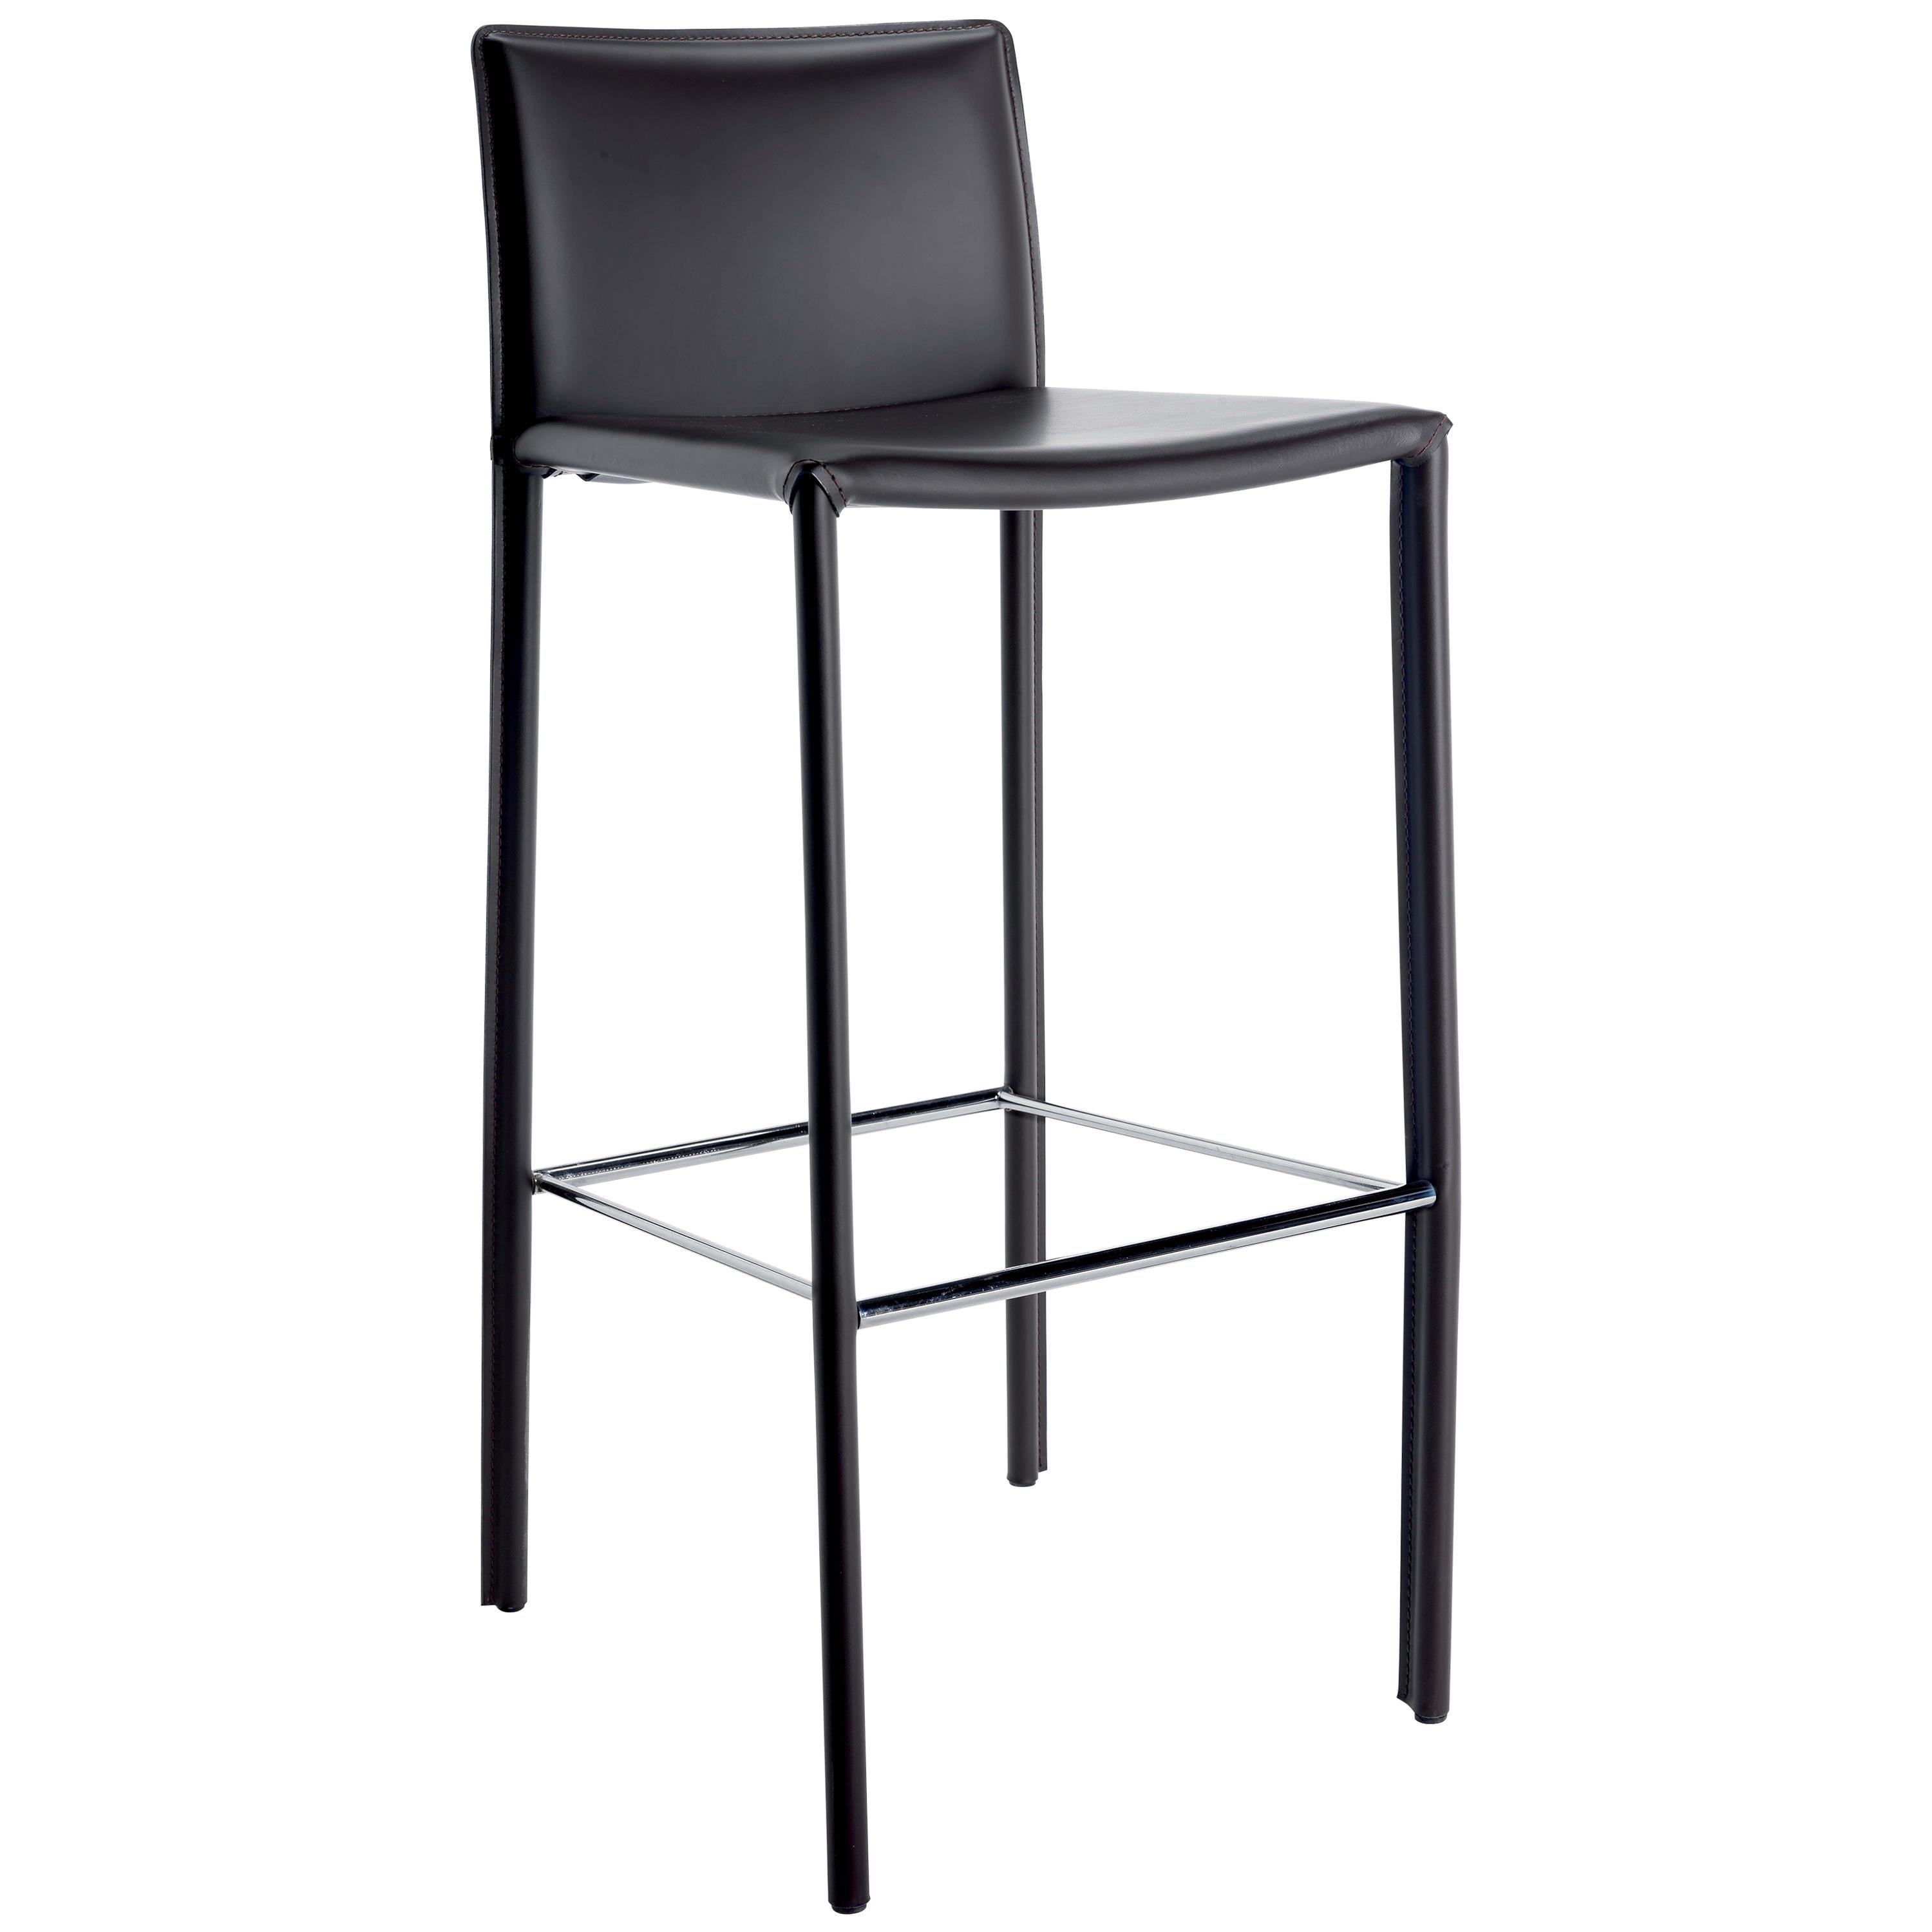 Gebrüder Thonet Vienna GmbH Twiggy Large Chair in Black and Backrest